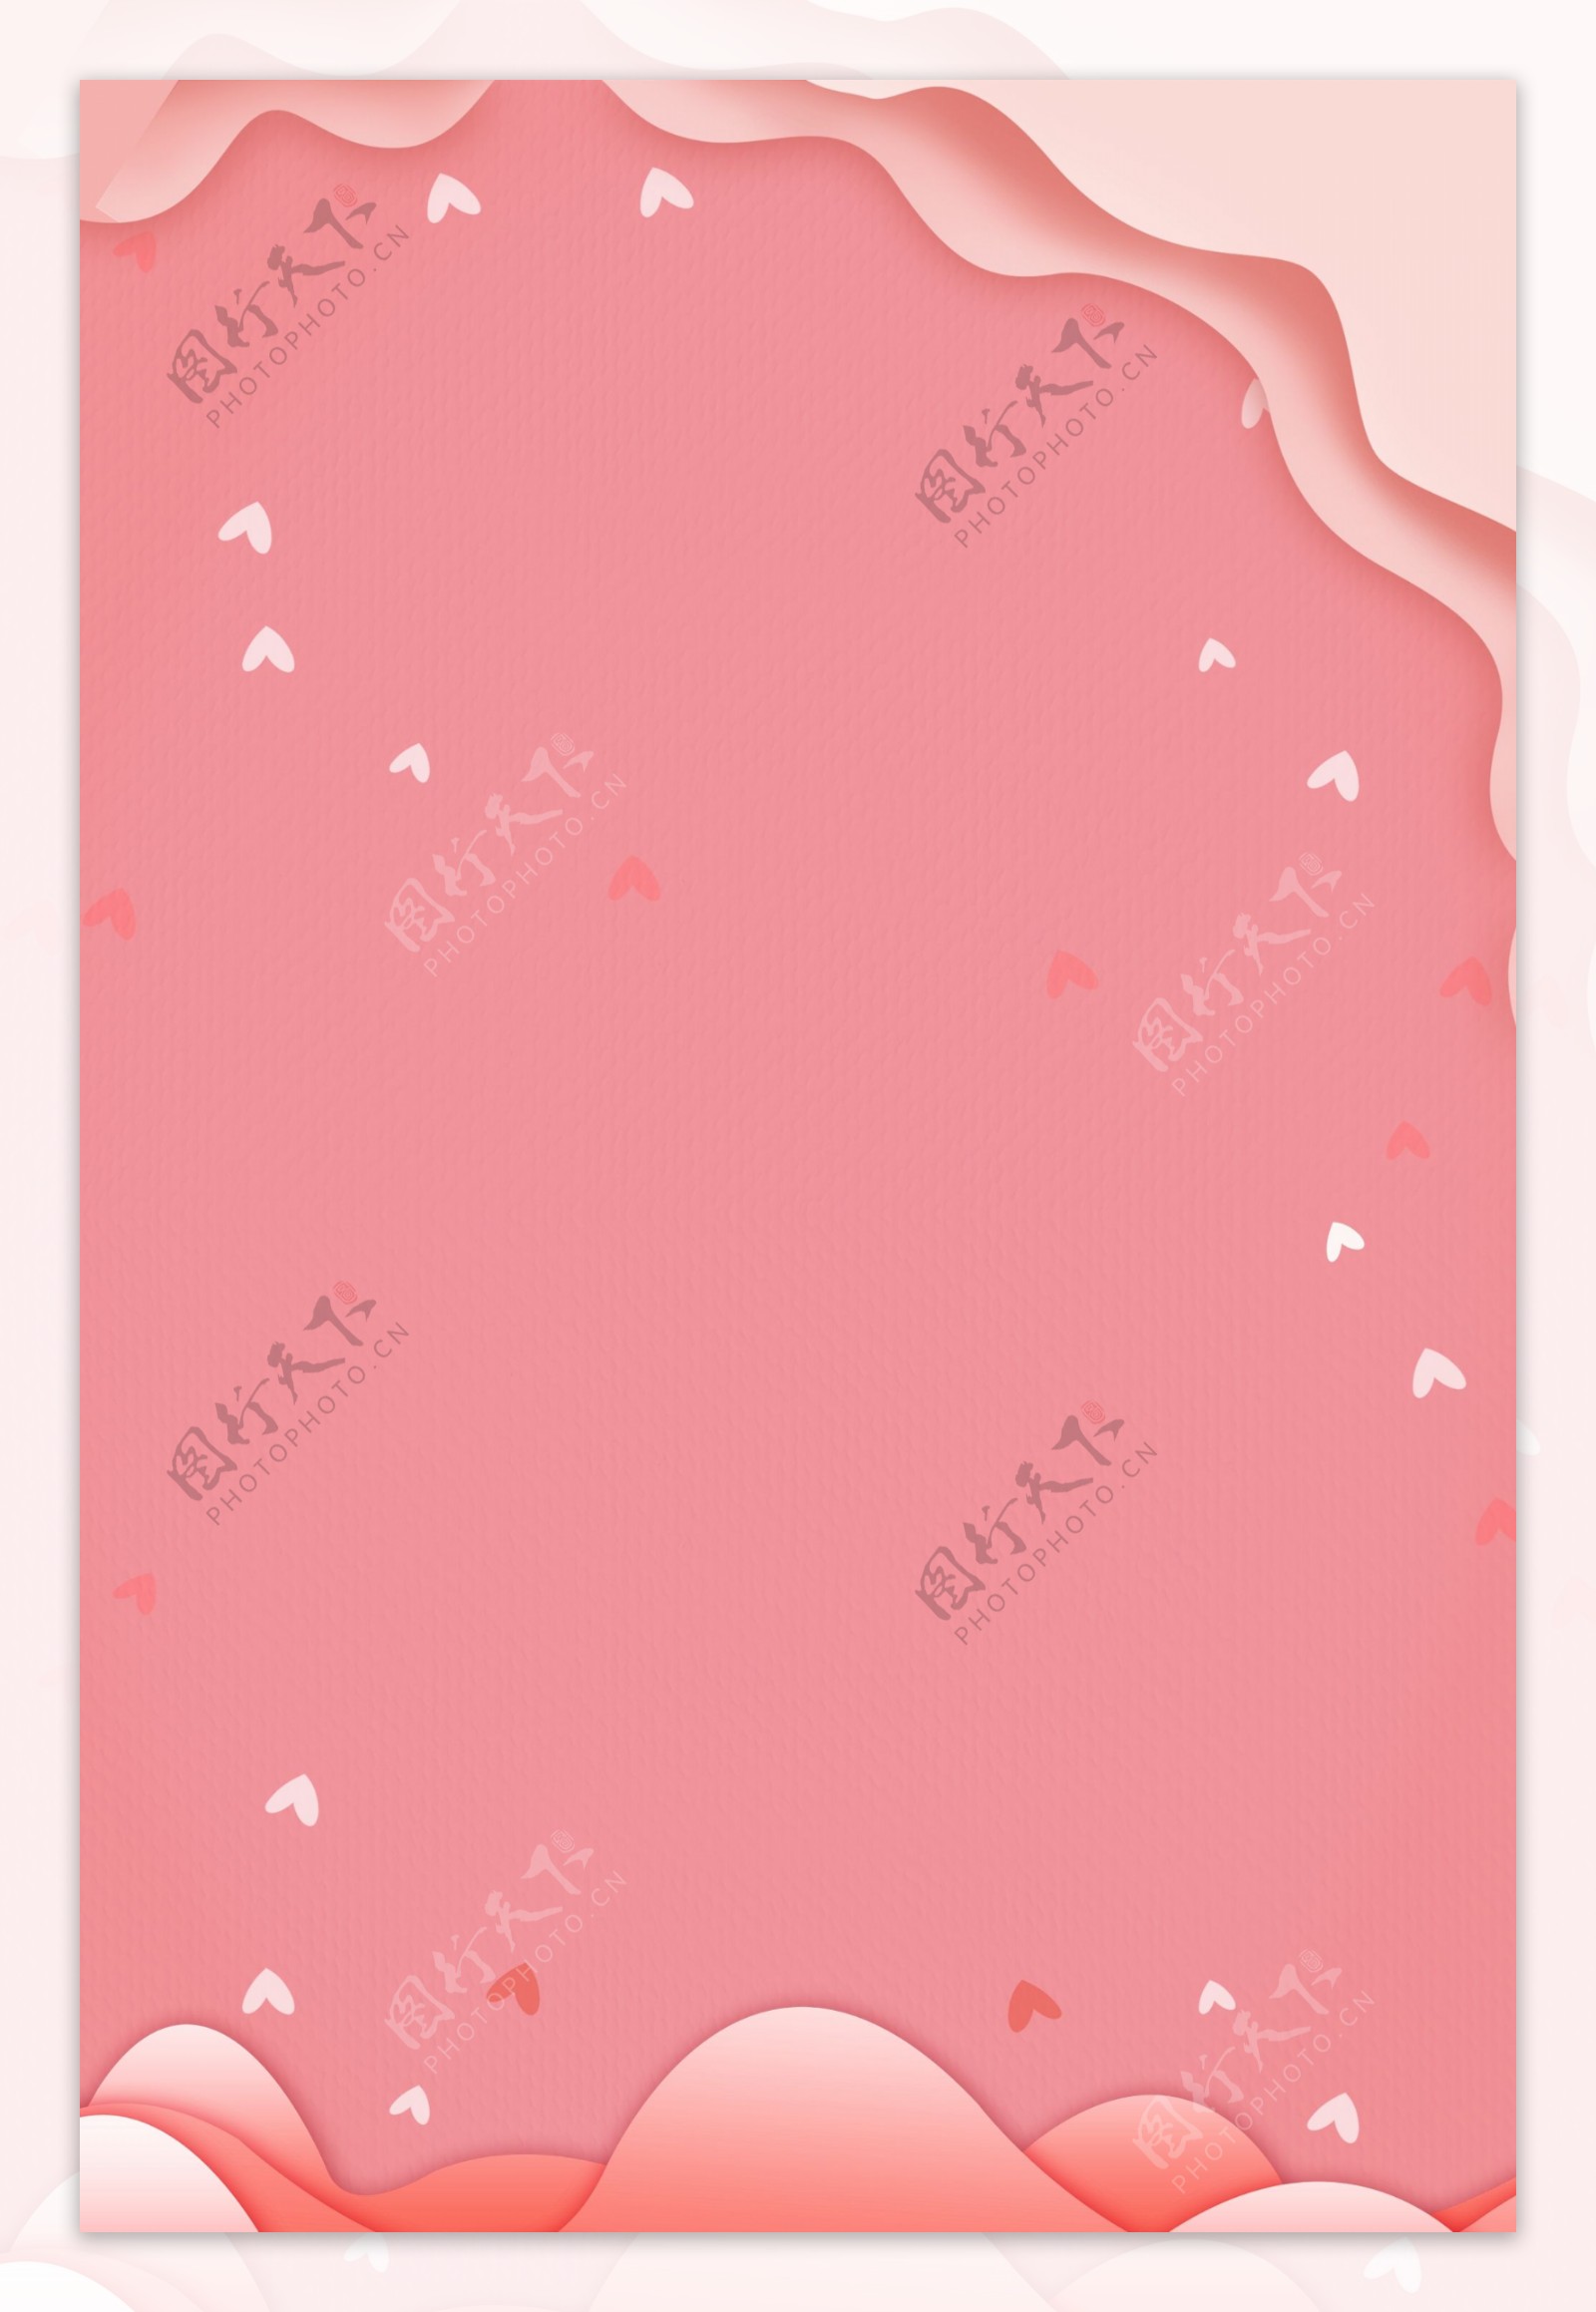 简约粉色妇女节女王节女神节通用背景素材